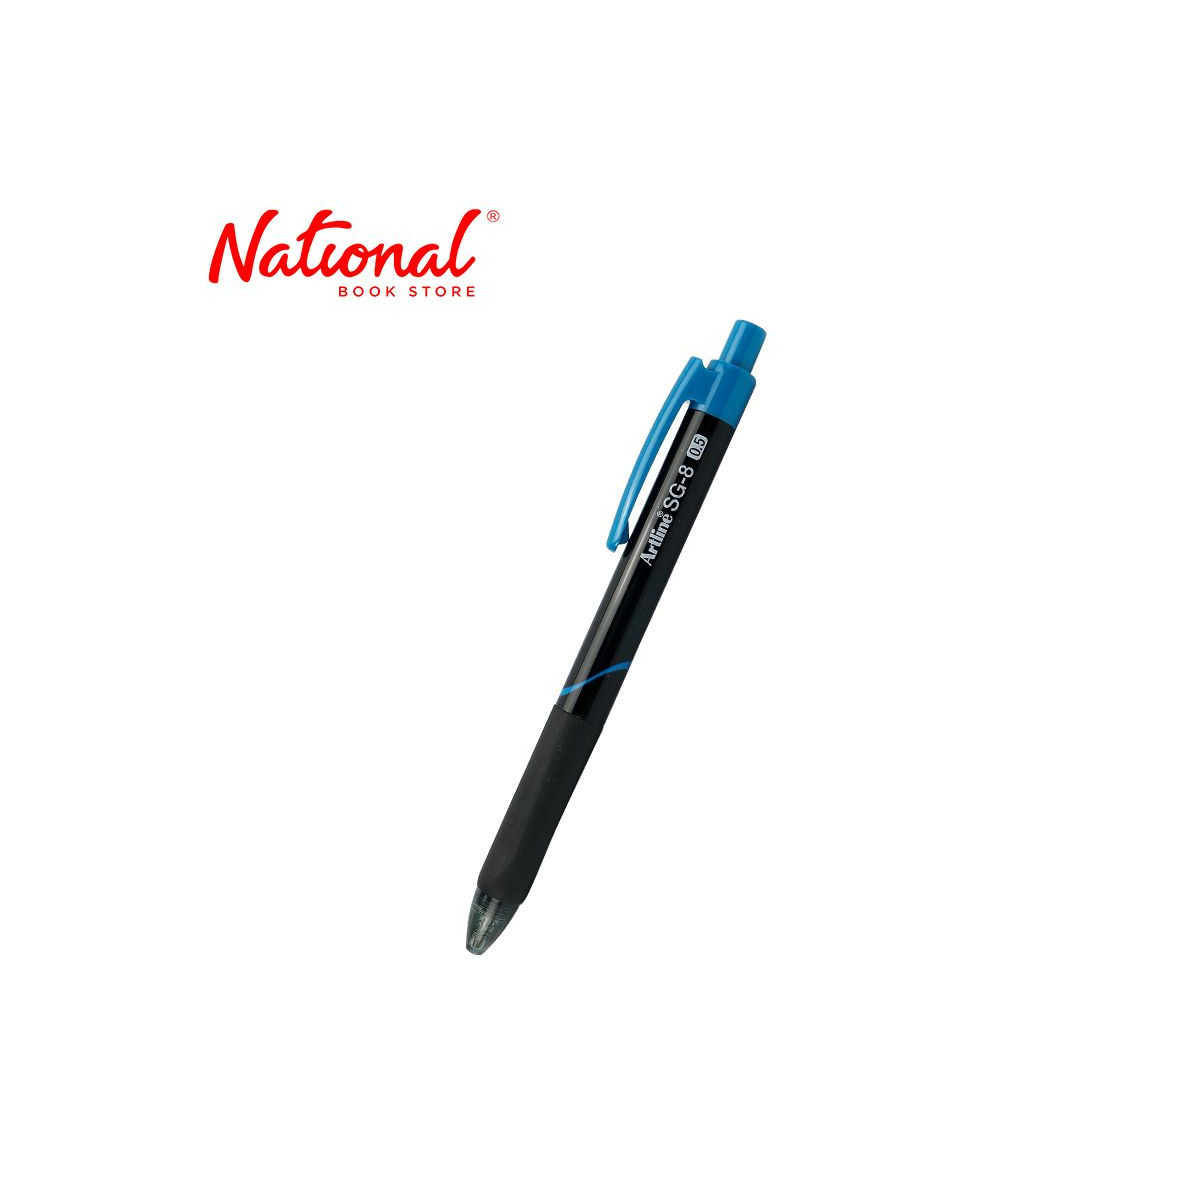 Artline SG-8 Ballpoint Pen Retractable Blue 0.5mm EGBSG8850 - Ballpens - School & Office Supplies